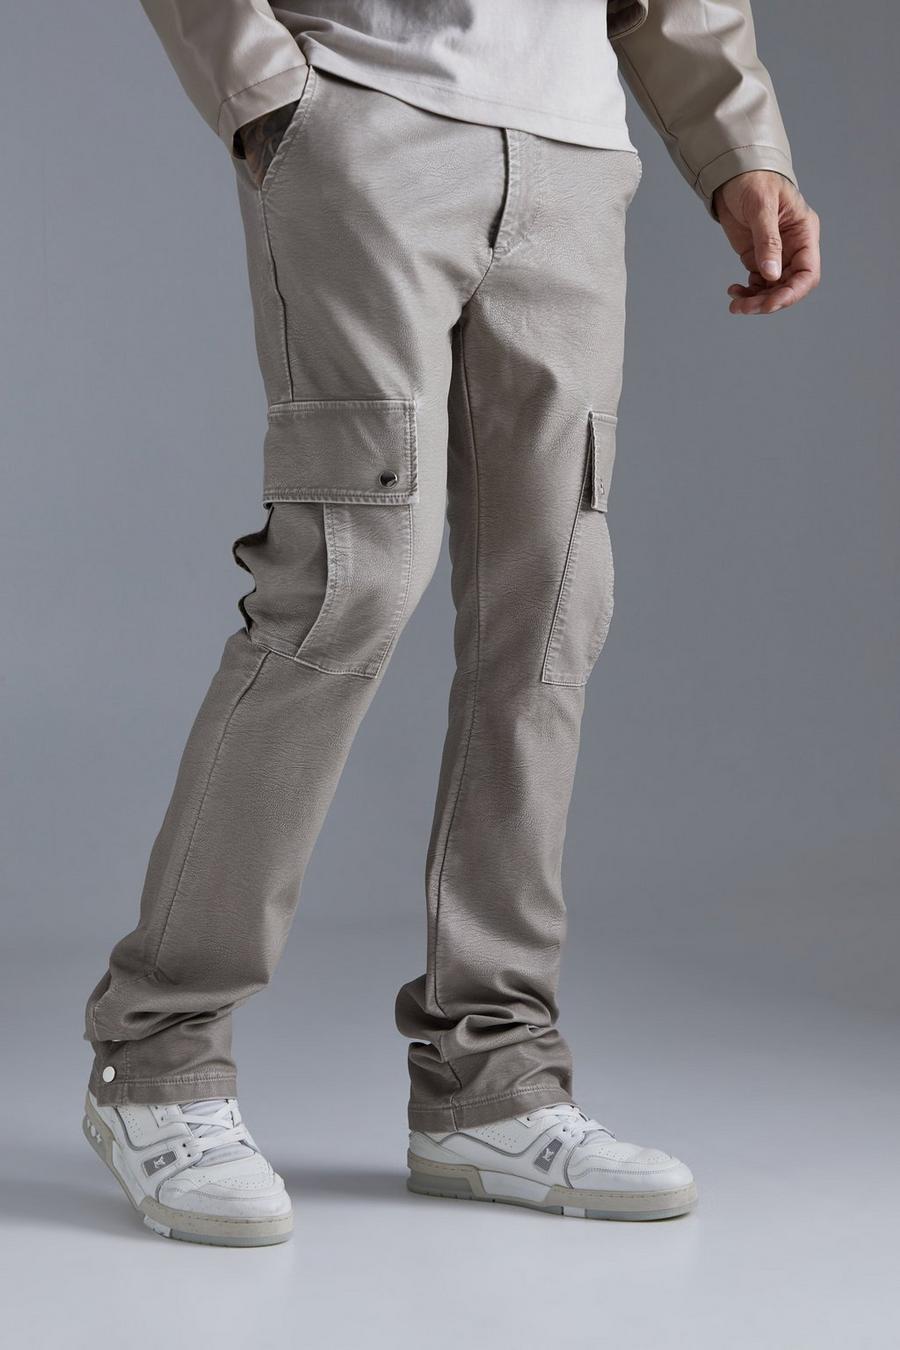 Pantaloni Cargo Slim Fit in PU slavato con bottoni a pressione sul fondo, Stone